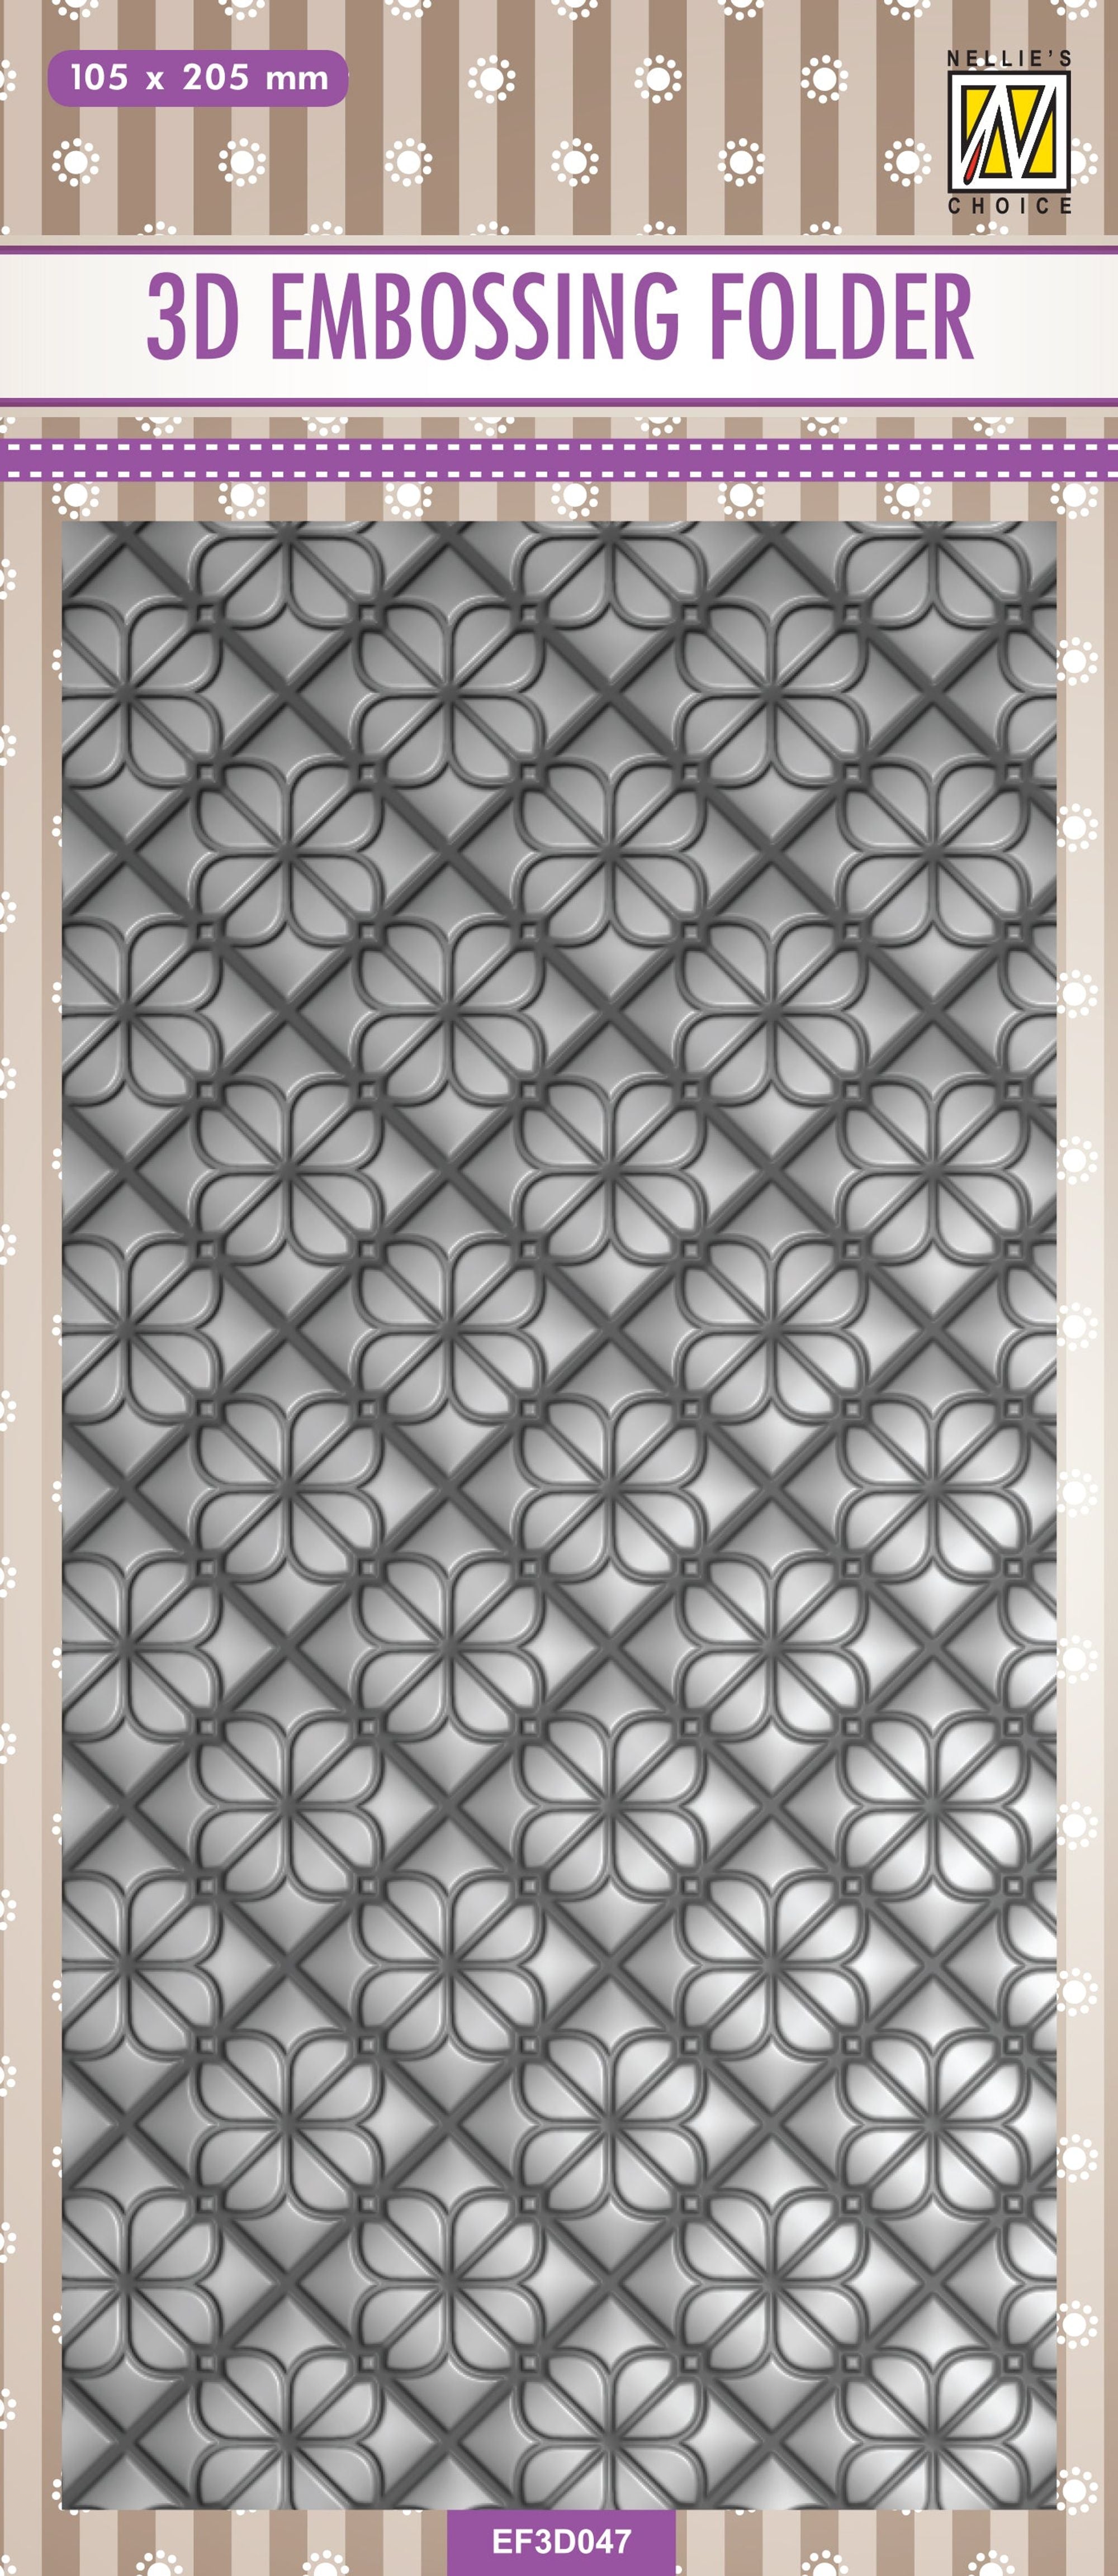 Nellie's Choice 3D Embossing Folder Slimline - Flower Backgrounds